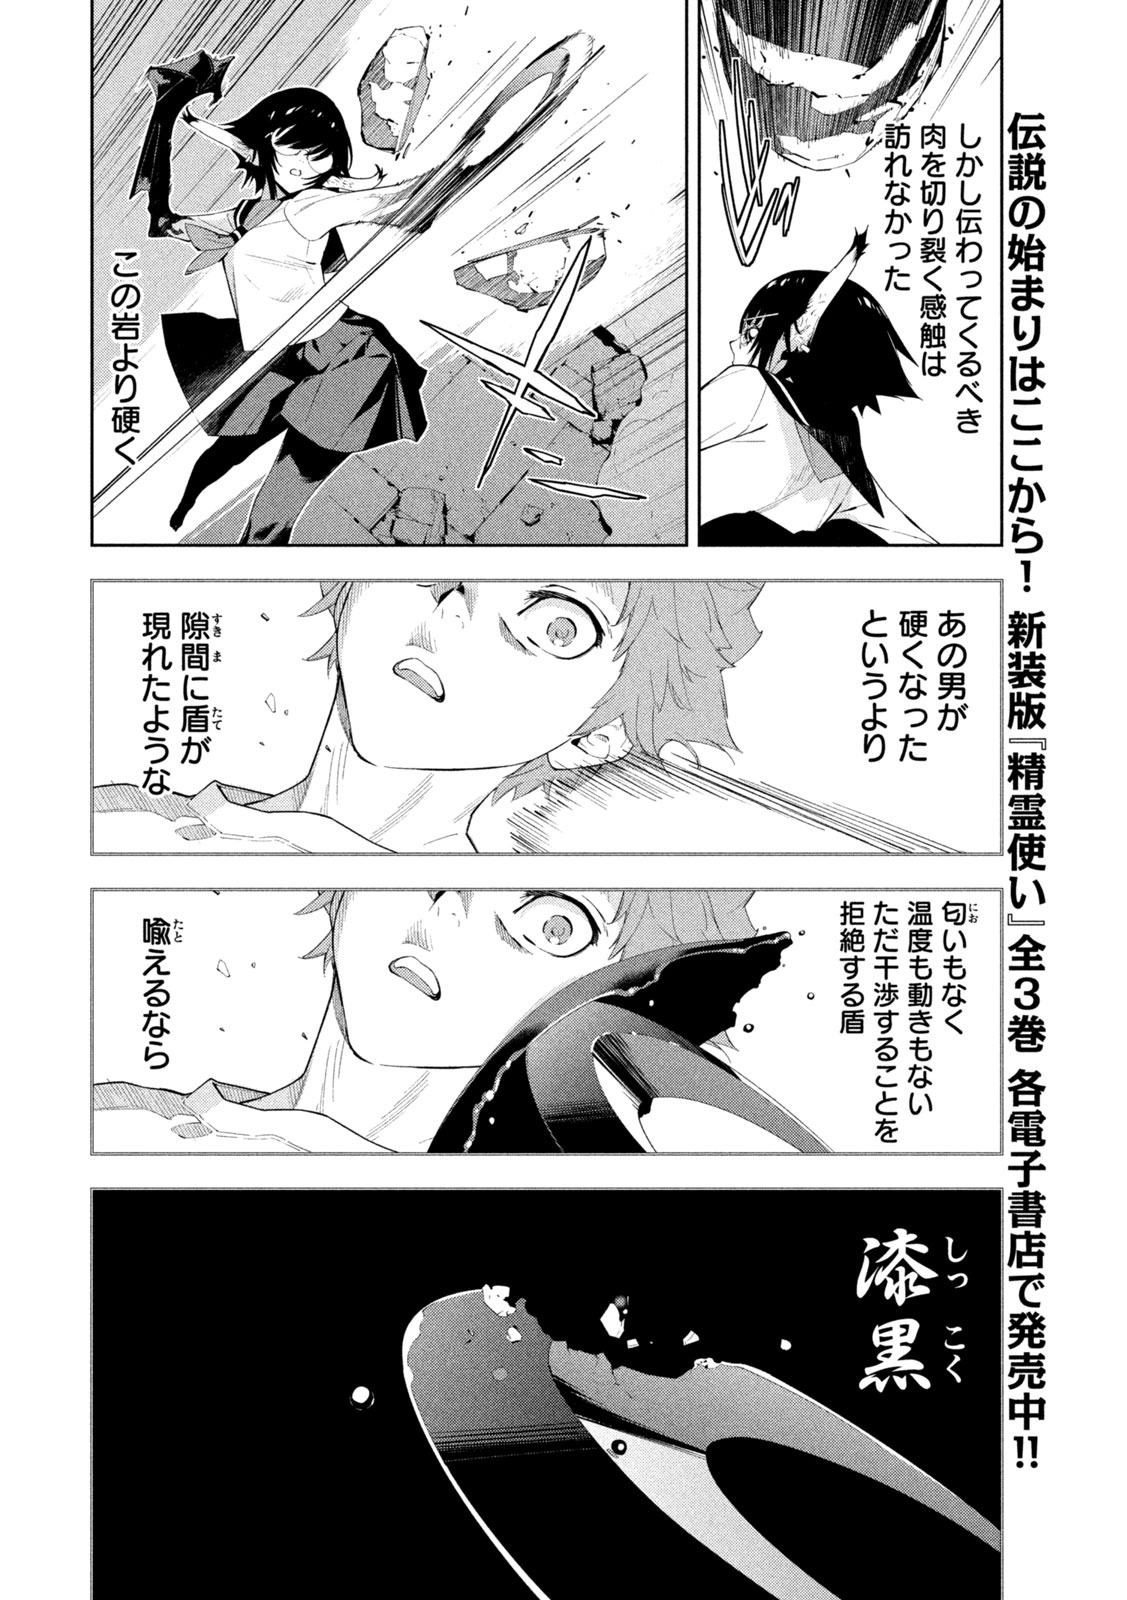 Seirei Tsukai – Chito no Jinshi - Chapter 29 - Page 8